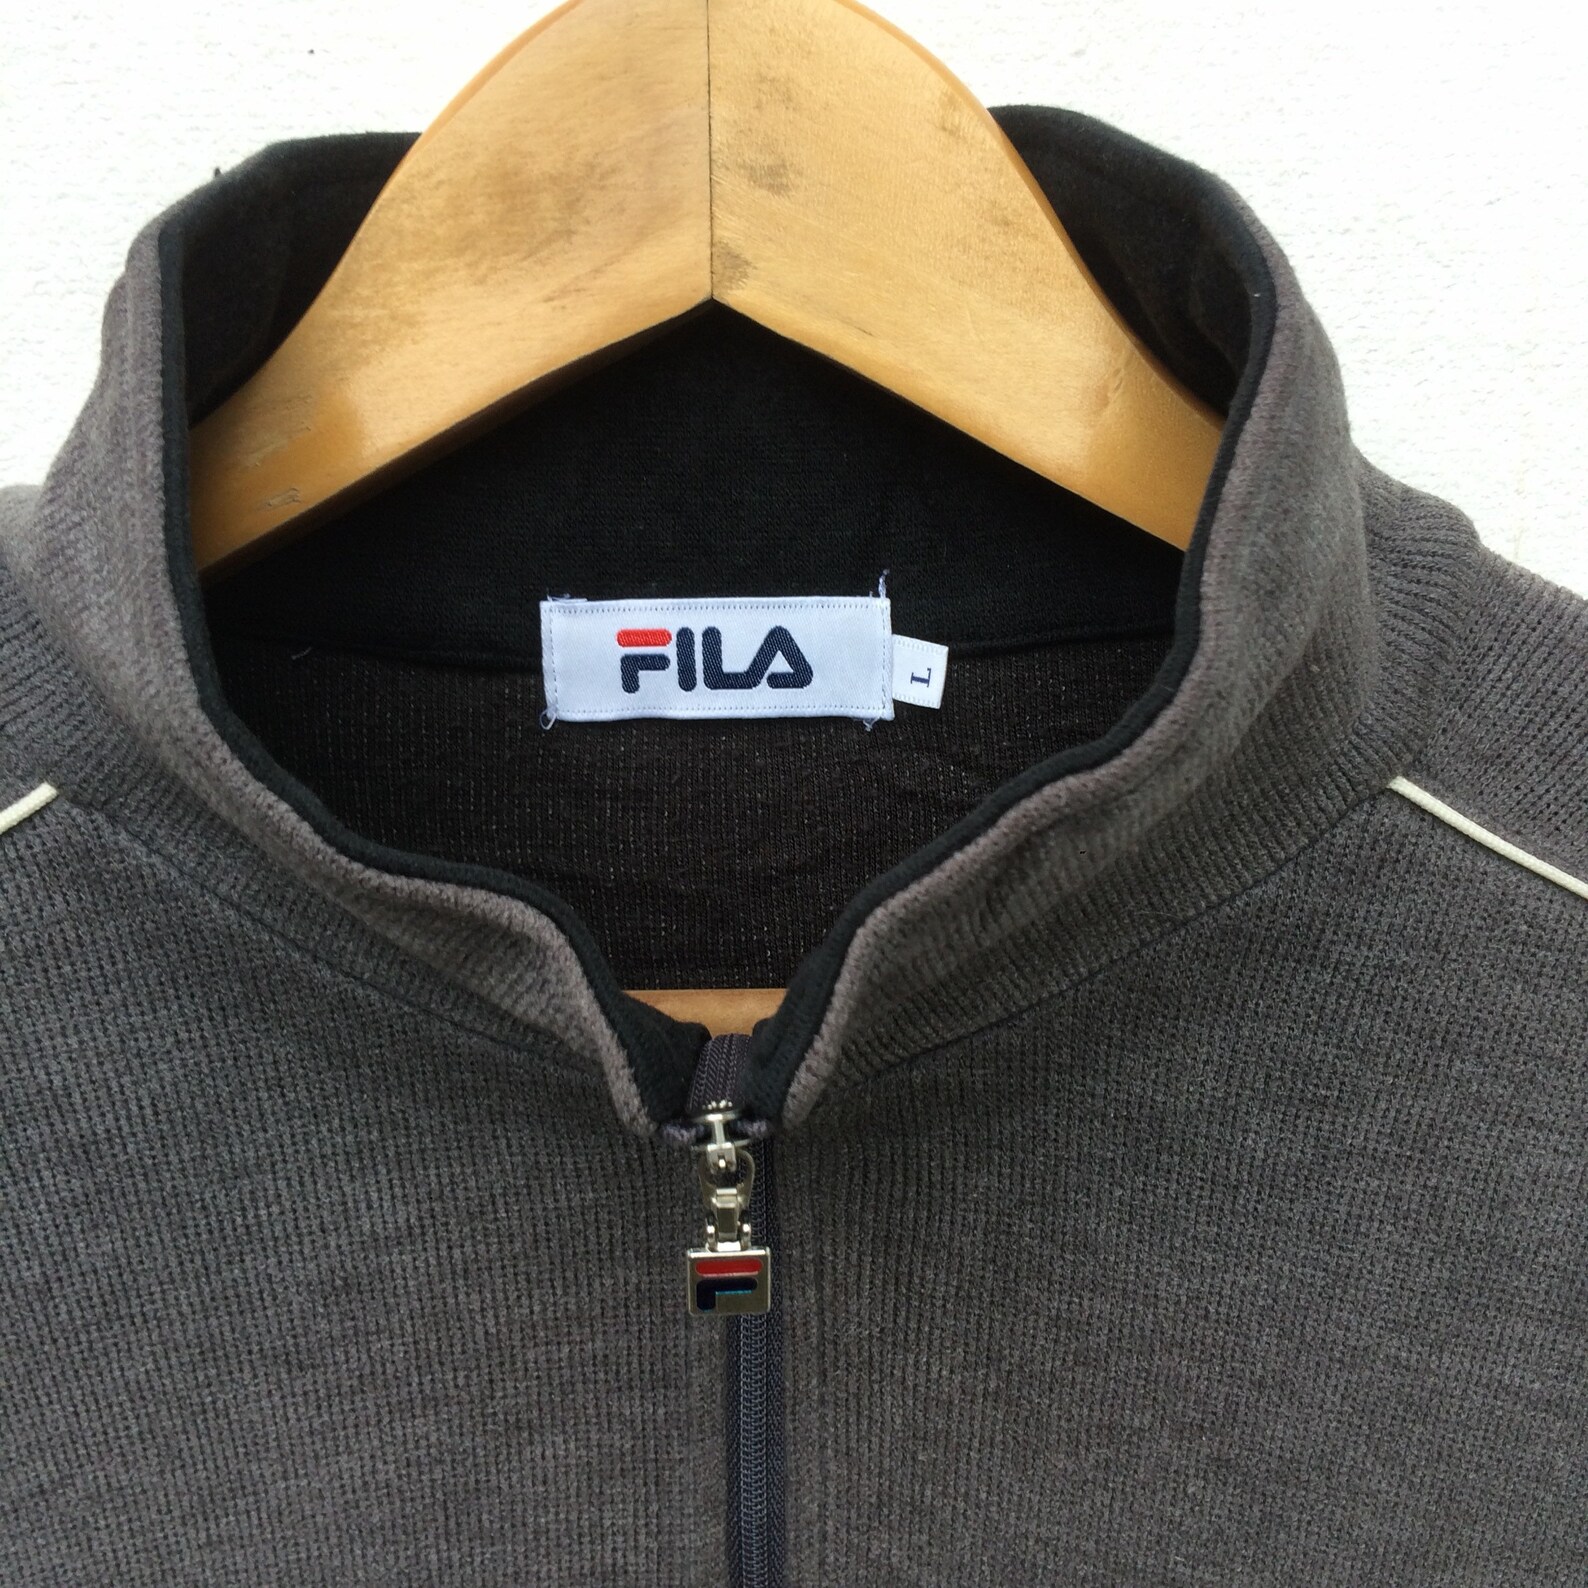 Vintage Fila Biella Italia Embroidered Zipper Fila Biella | Etsy